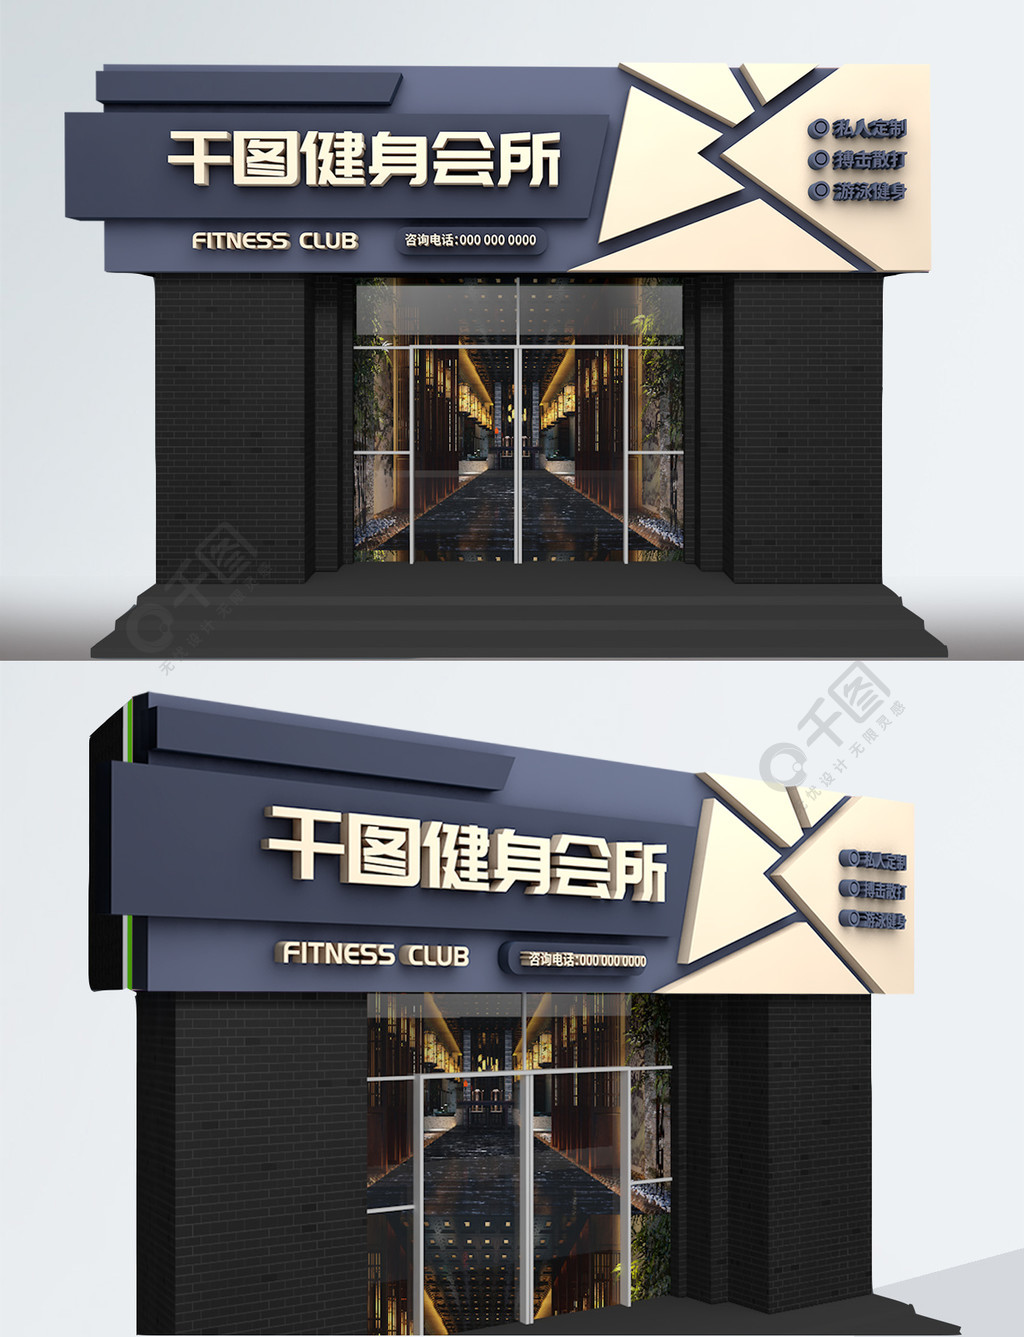 原创立体店招健身会所门头设计1年前发布